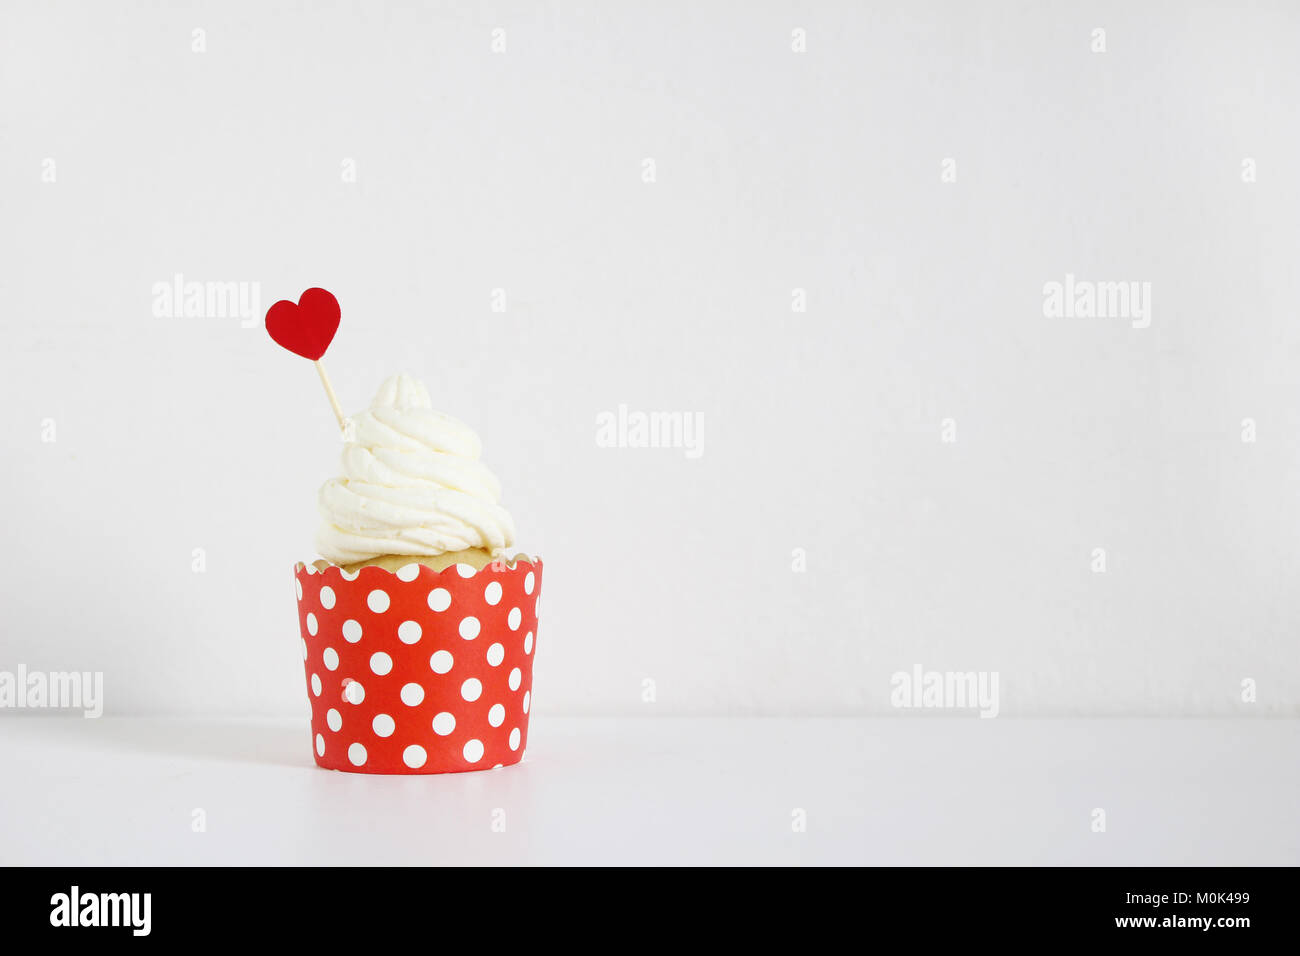 Lecker Kuchen mit rotem Papier herzen Dekoration auf weißer Tisch. Geburtstag, Hochzeit oder Valentinstag Party Food. Liebe Konzept. Stockfoto